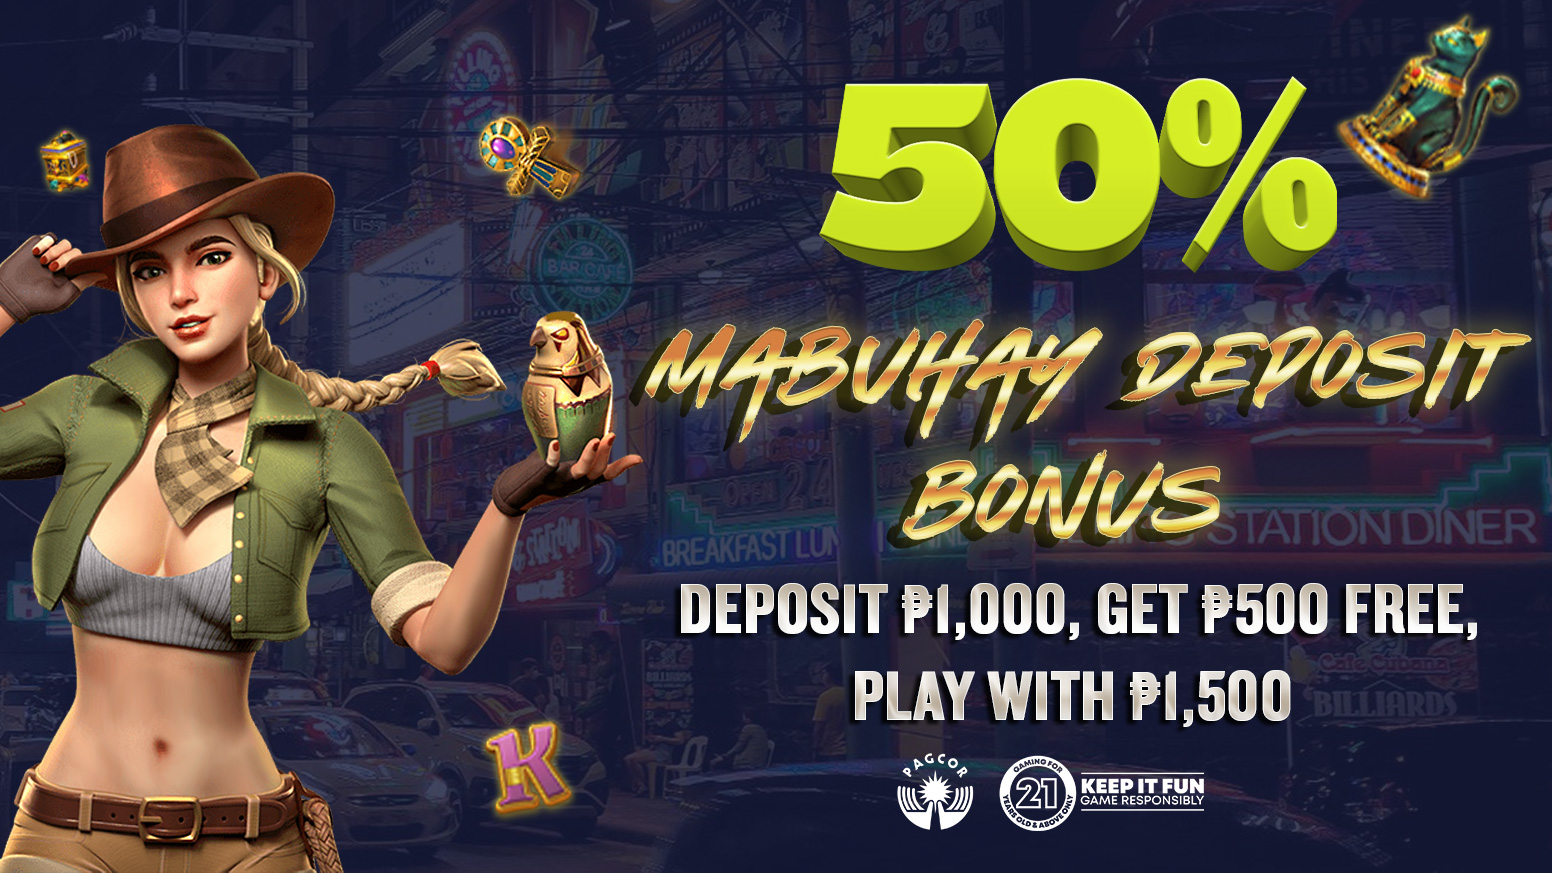 Get your 50% Mabuhay deposit bonus now